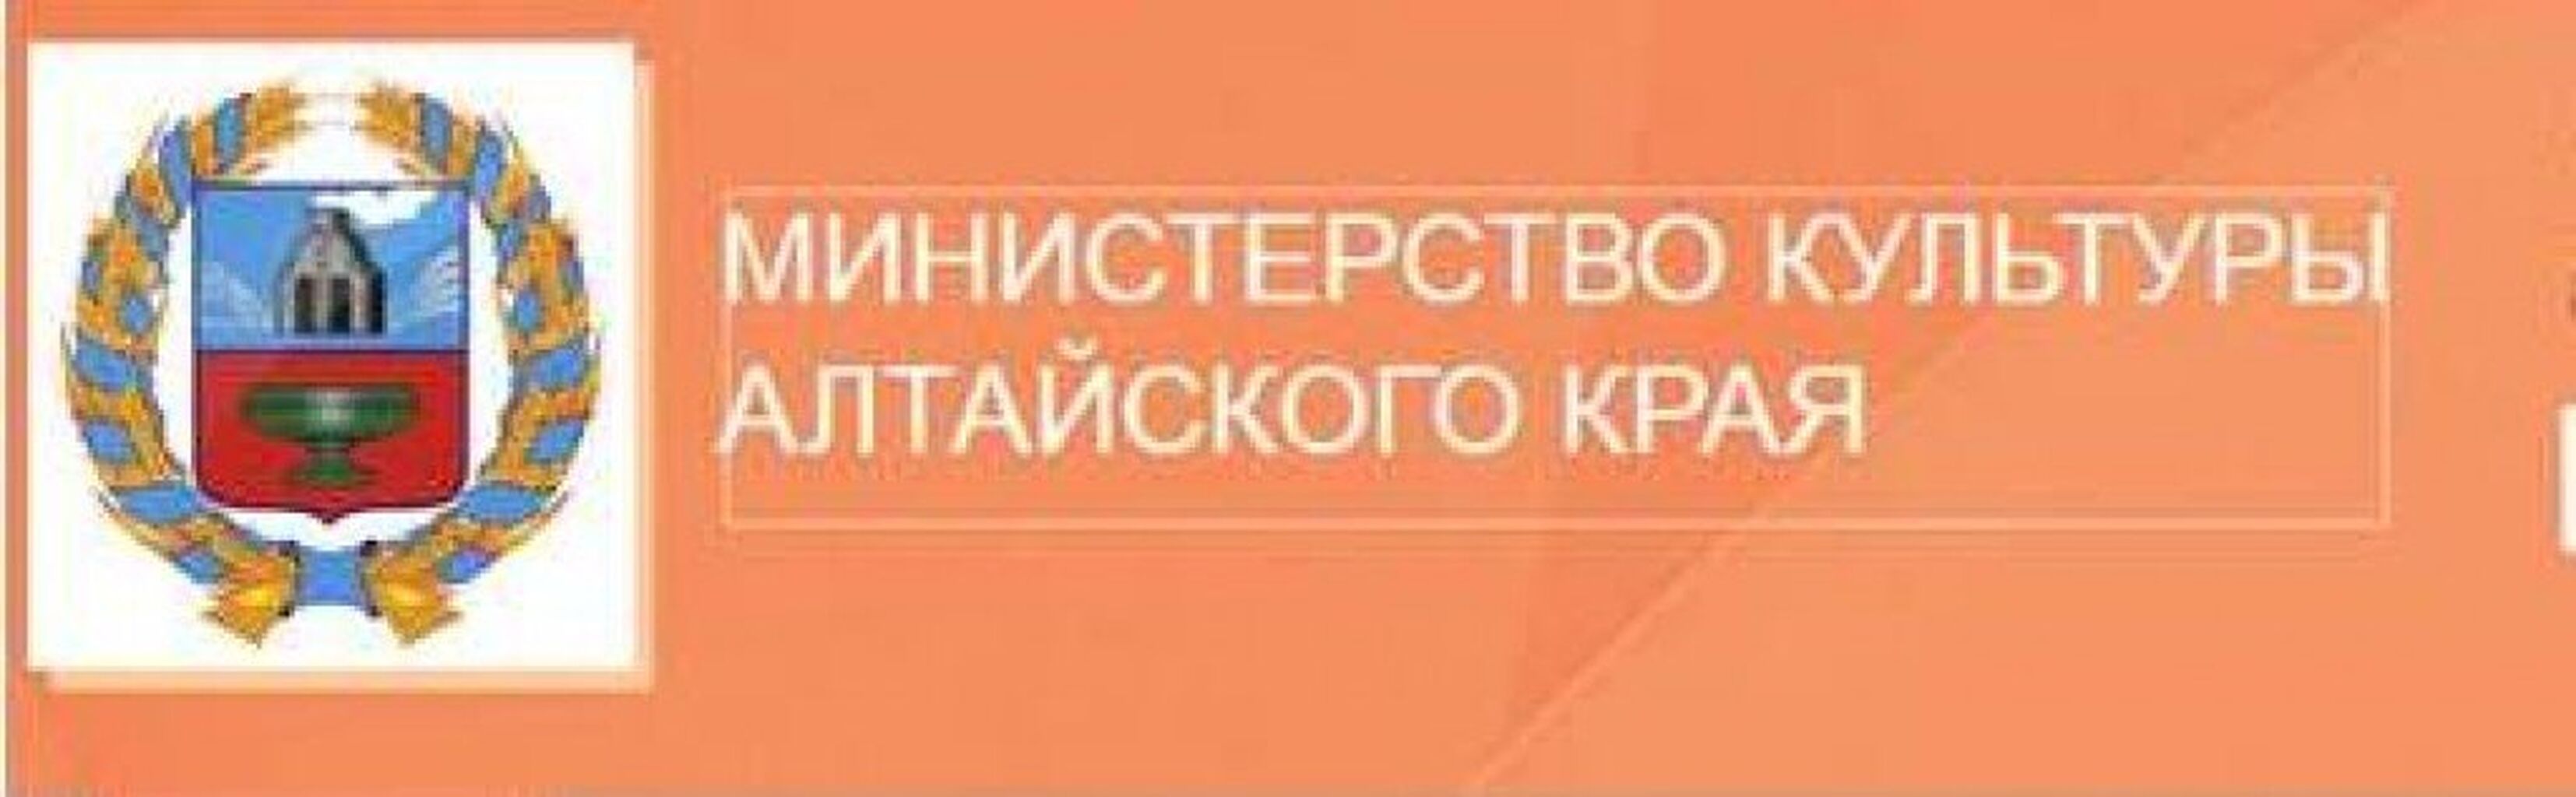 Логотип Министерства образования Алтайского края